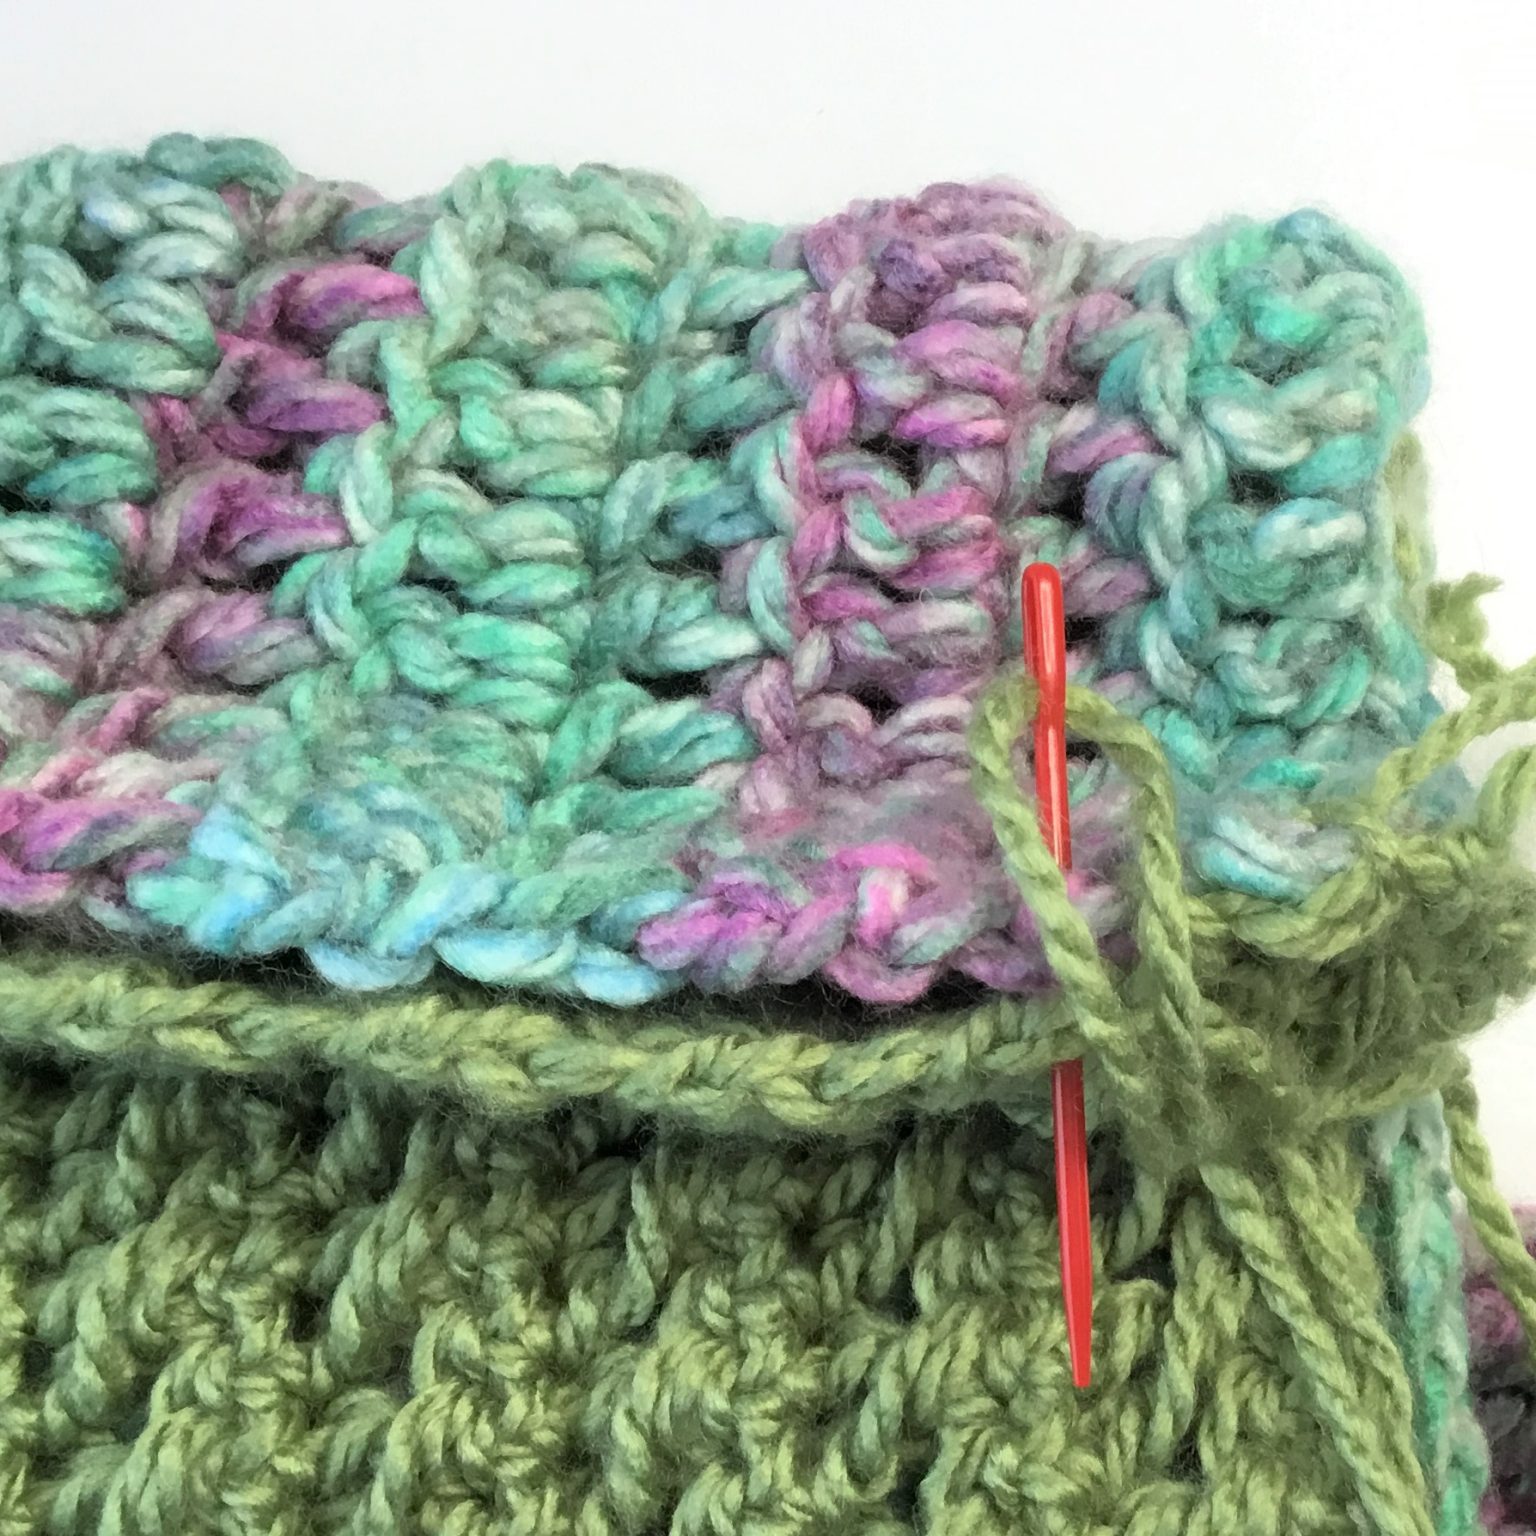 Crochet Floor Pillow Free Pattern - Crazy Cool Crochet